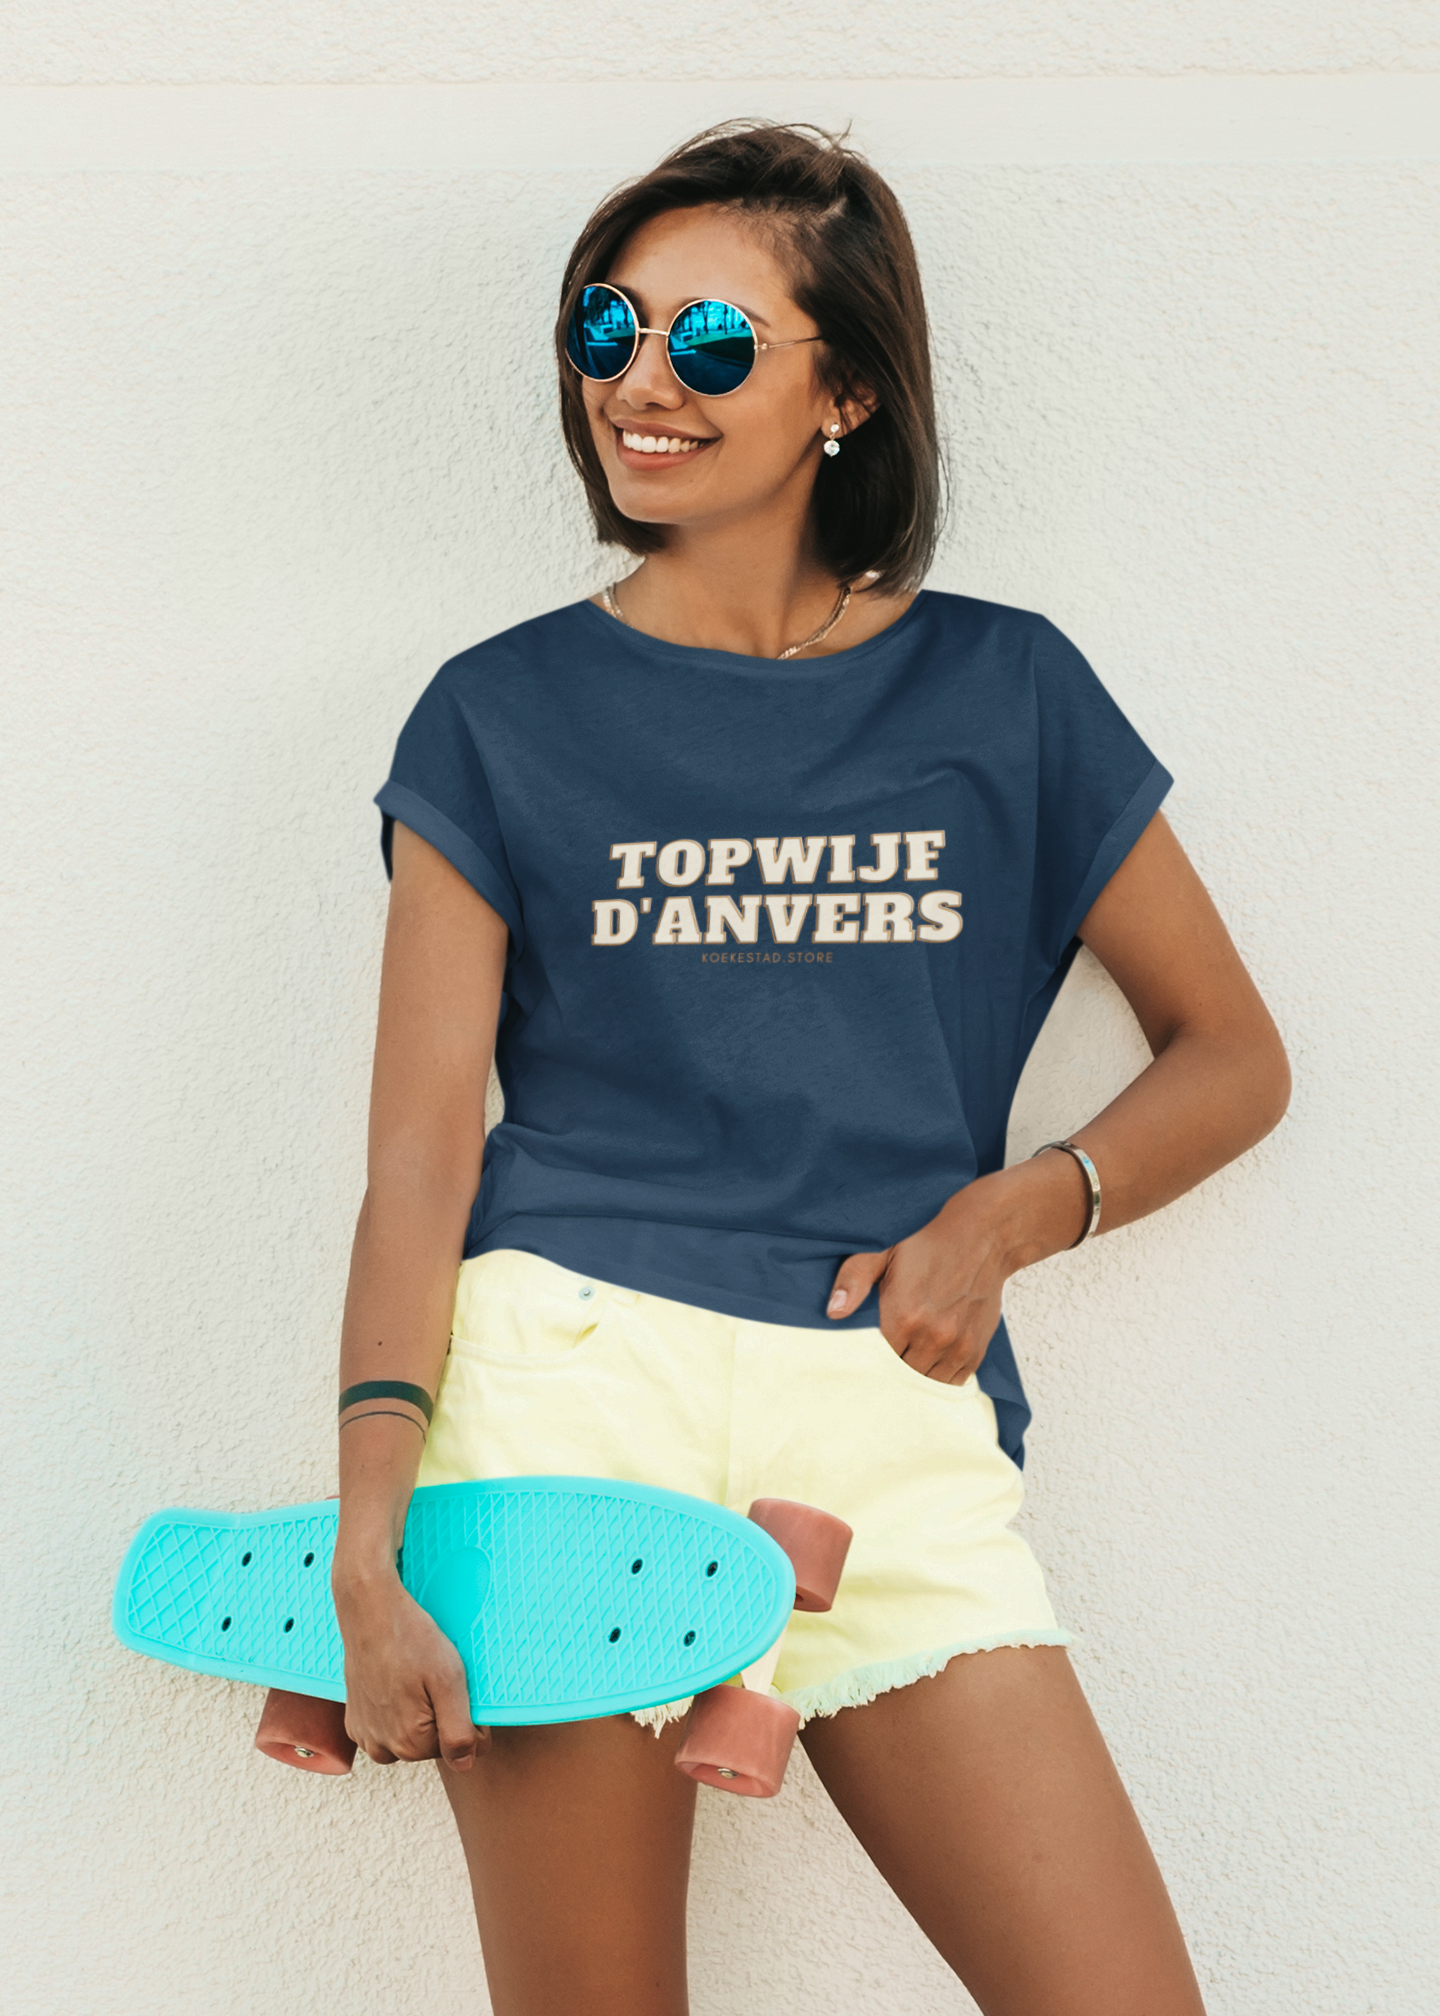 Premium Dames T-Shirt Topwijf D'Anvers - 100 % Biokatoen